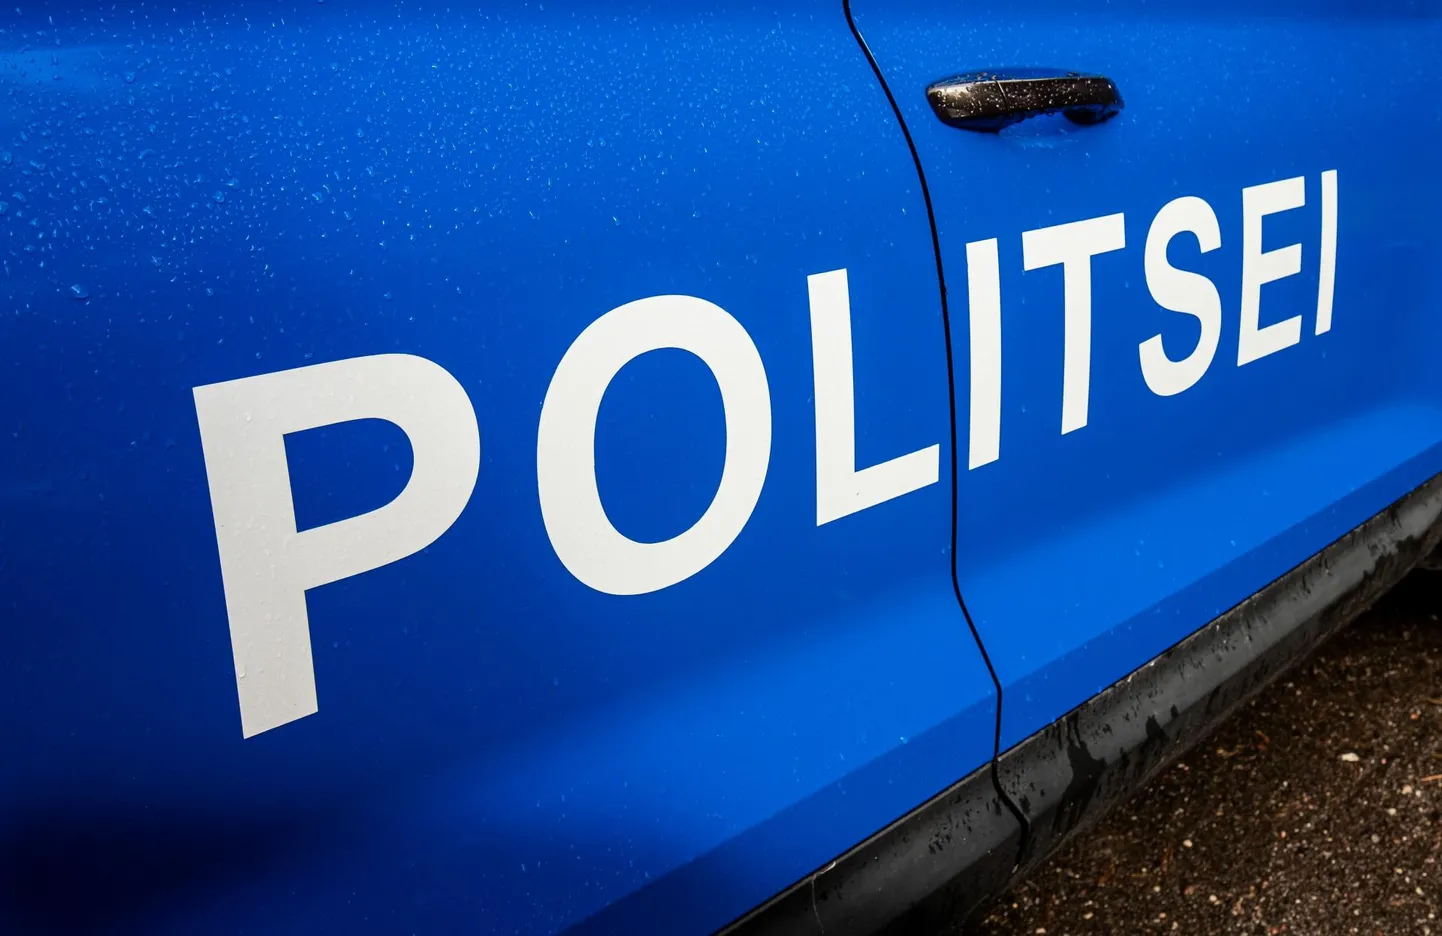 Pikk pühadenädalavahetus möödus Pärnumaal politseile üldiselt rahulikult, väljakutseid tavapärasest rohkem ei olnud.